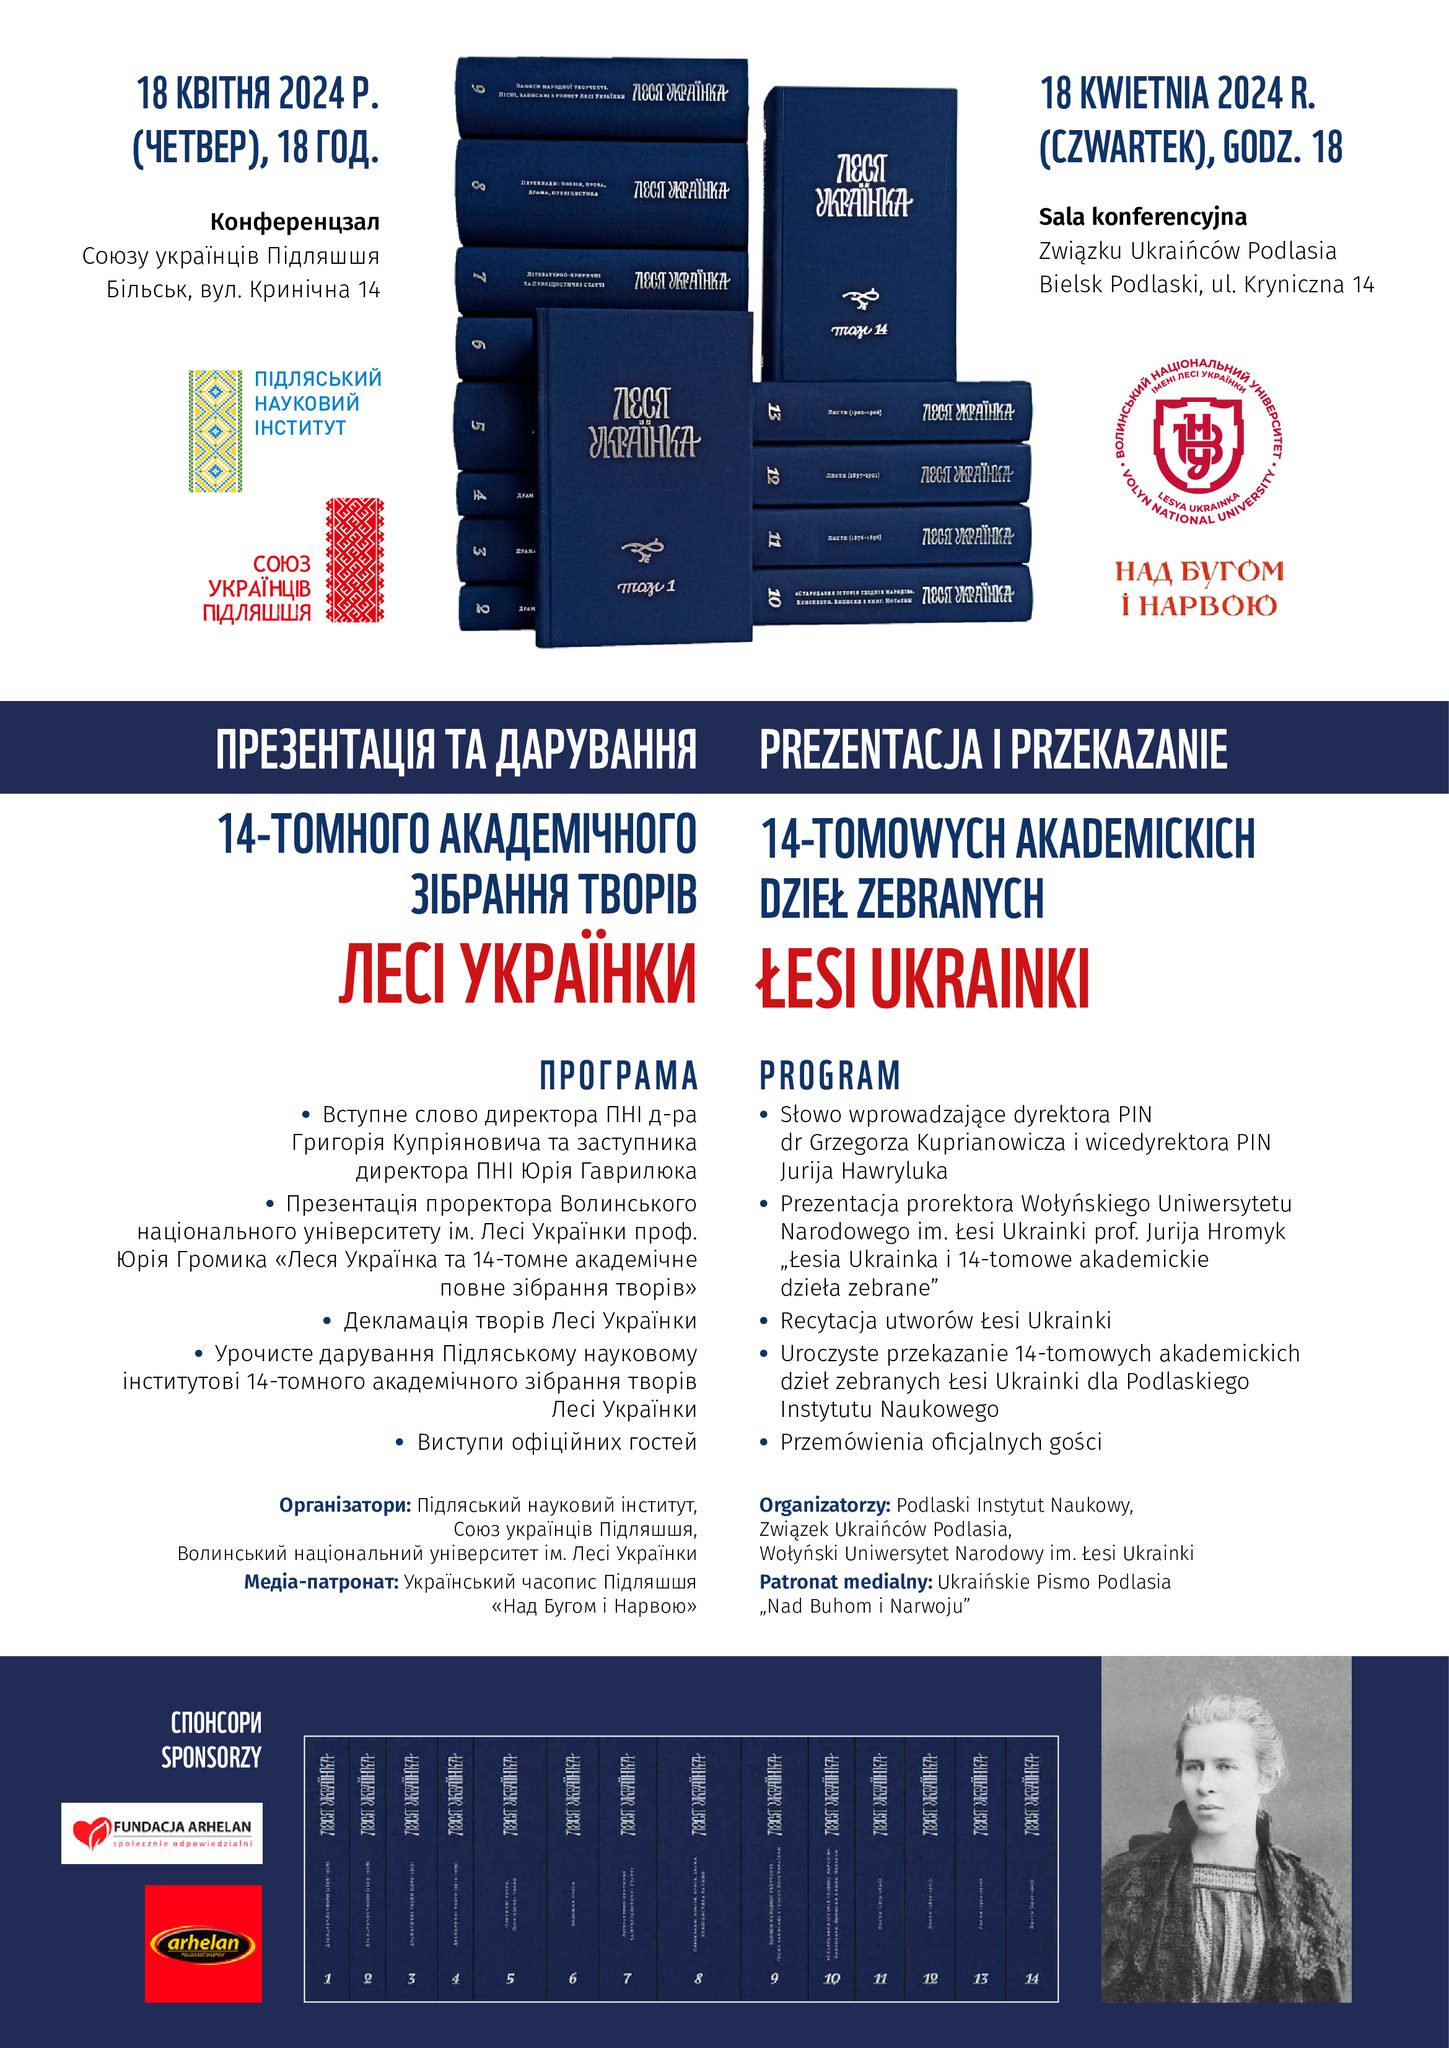 Prezentacja i przekazanie 14-tomowych akademickich dzieł zebranych Łesi Ukrainki